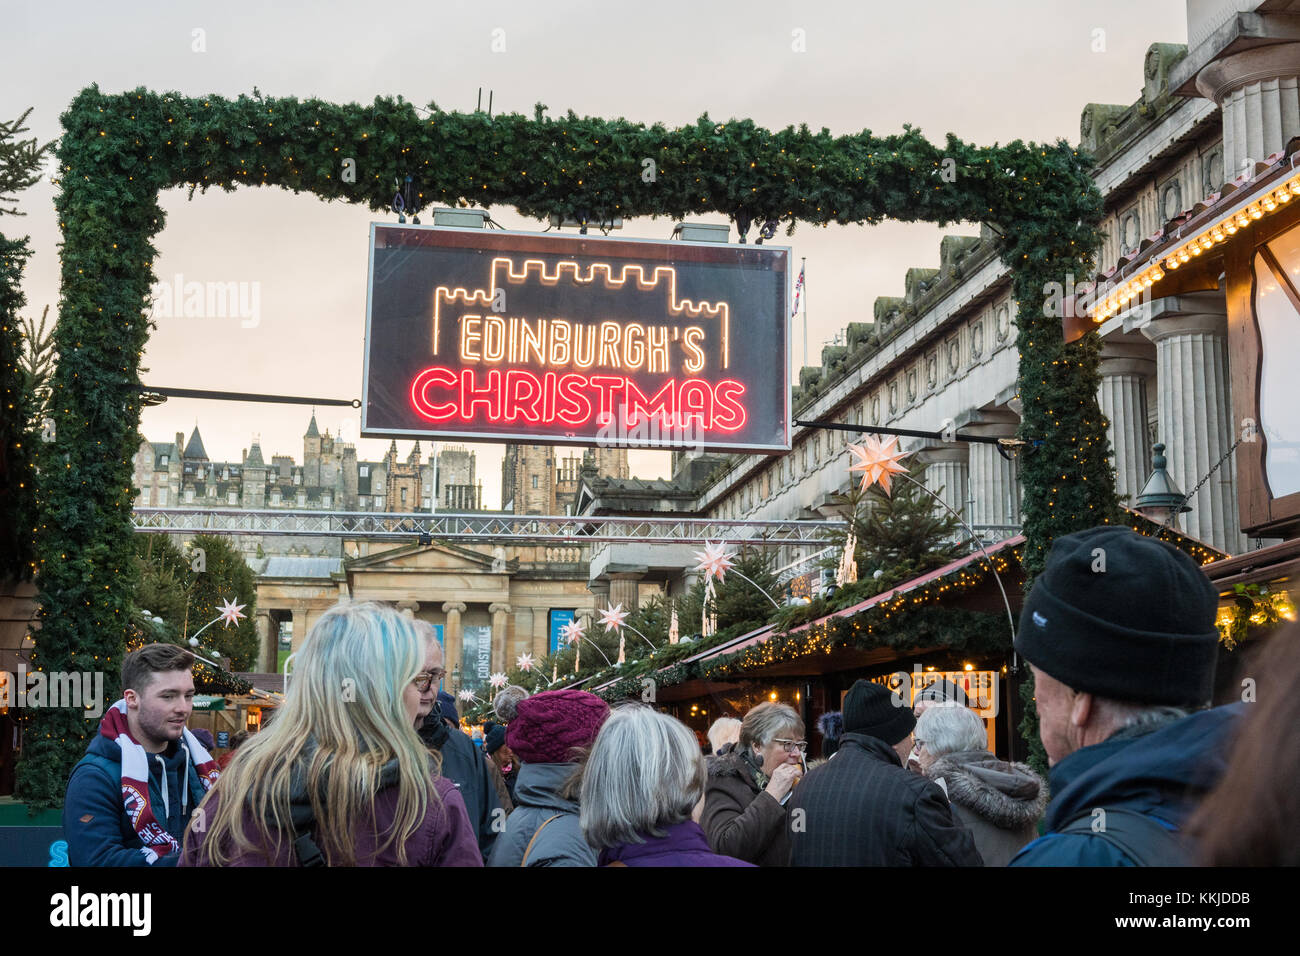 Edinburgh's Christmas 2017 - gente entrando en el mercado de navidad en Edimburgo, Escocia, Reino Unido Foto de stock